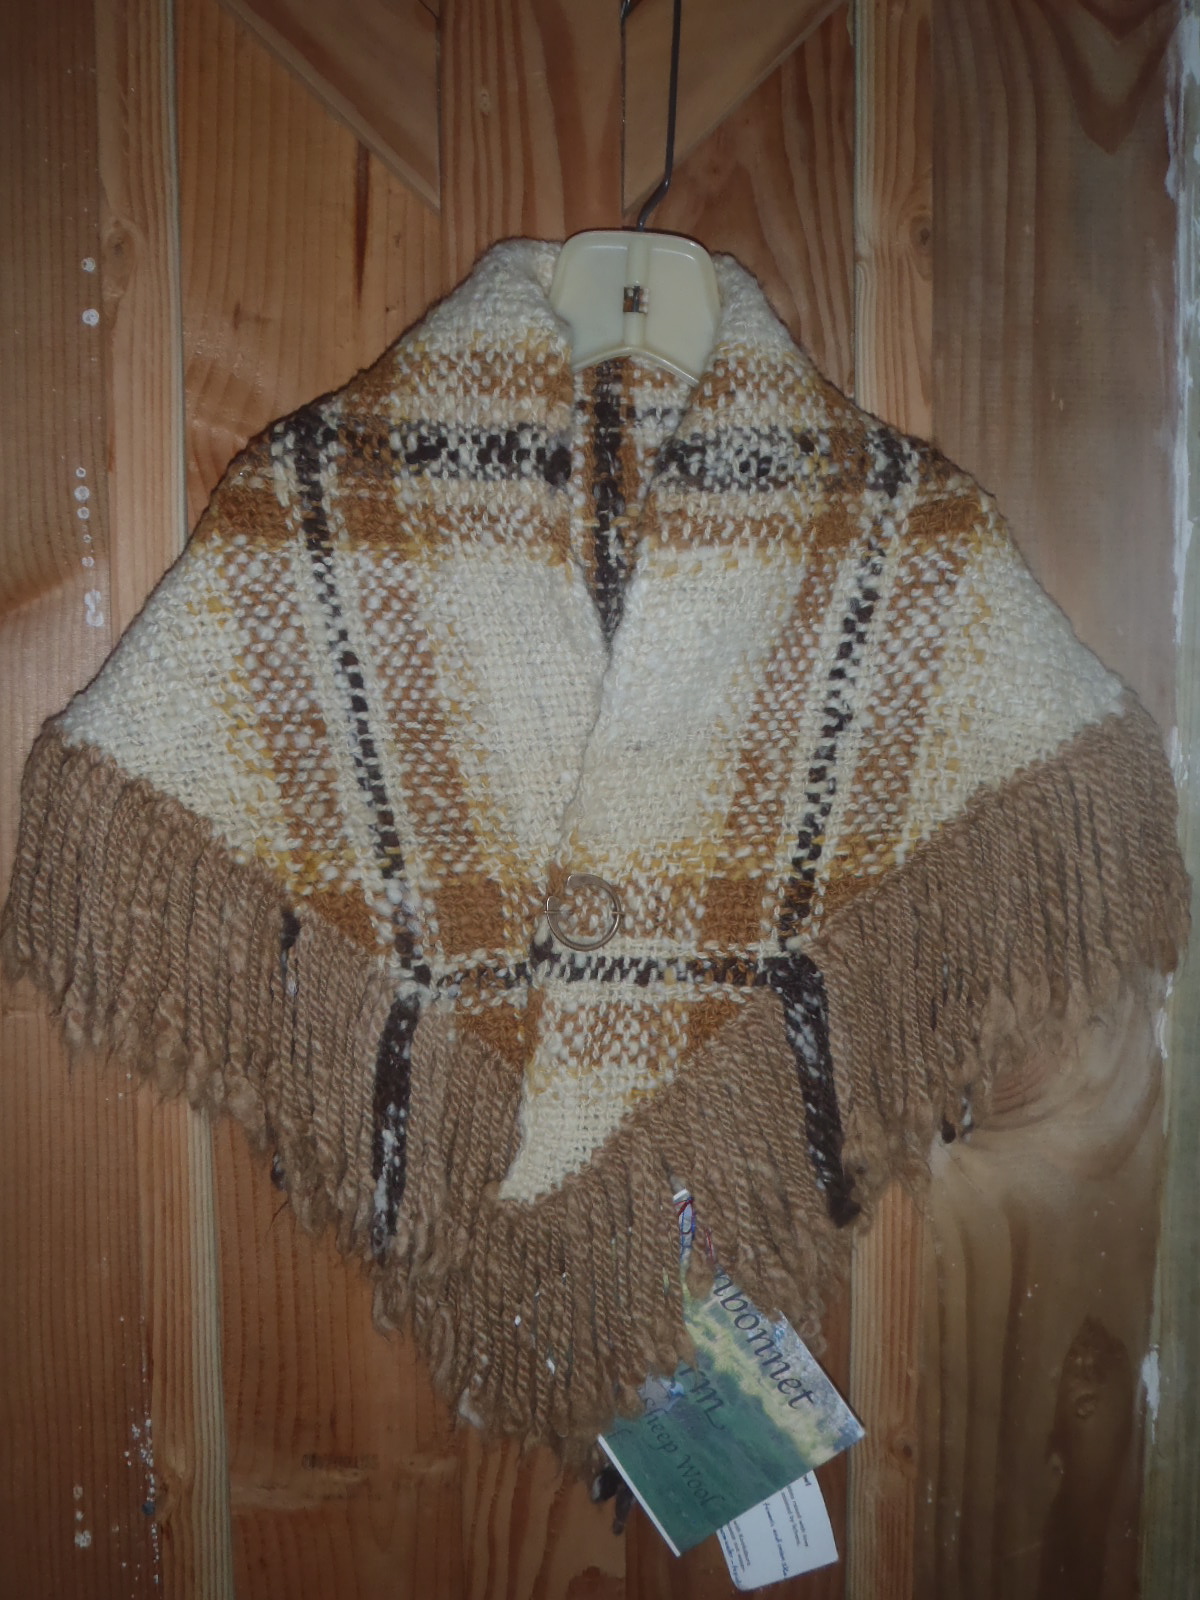 Photo of the shawl with alpaca fringe.